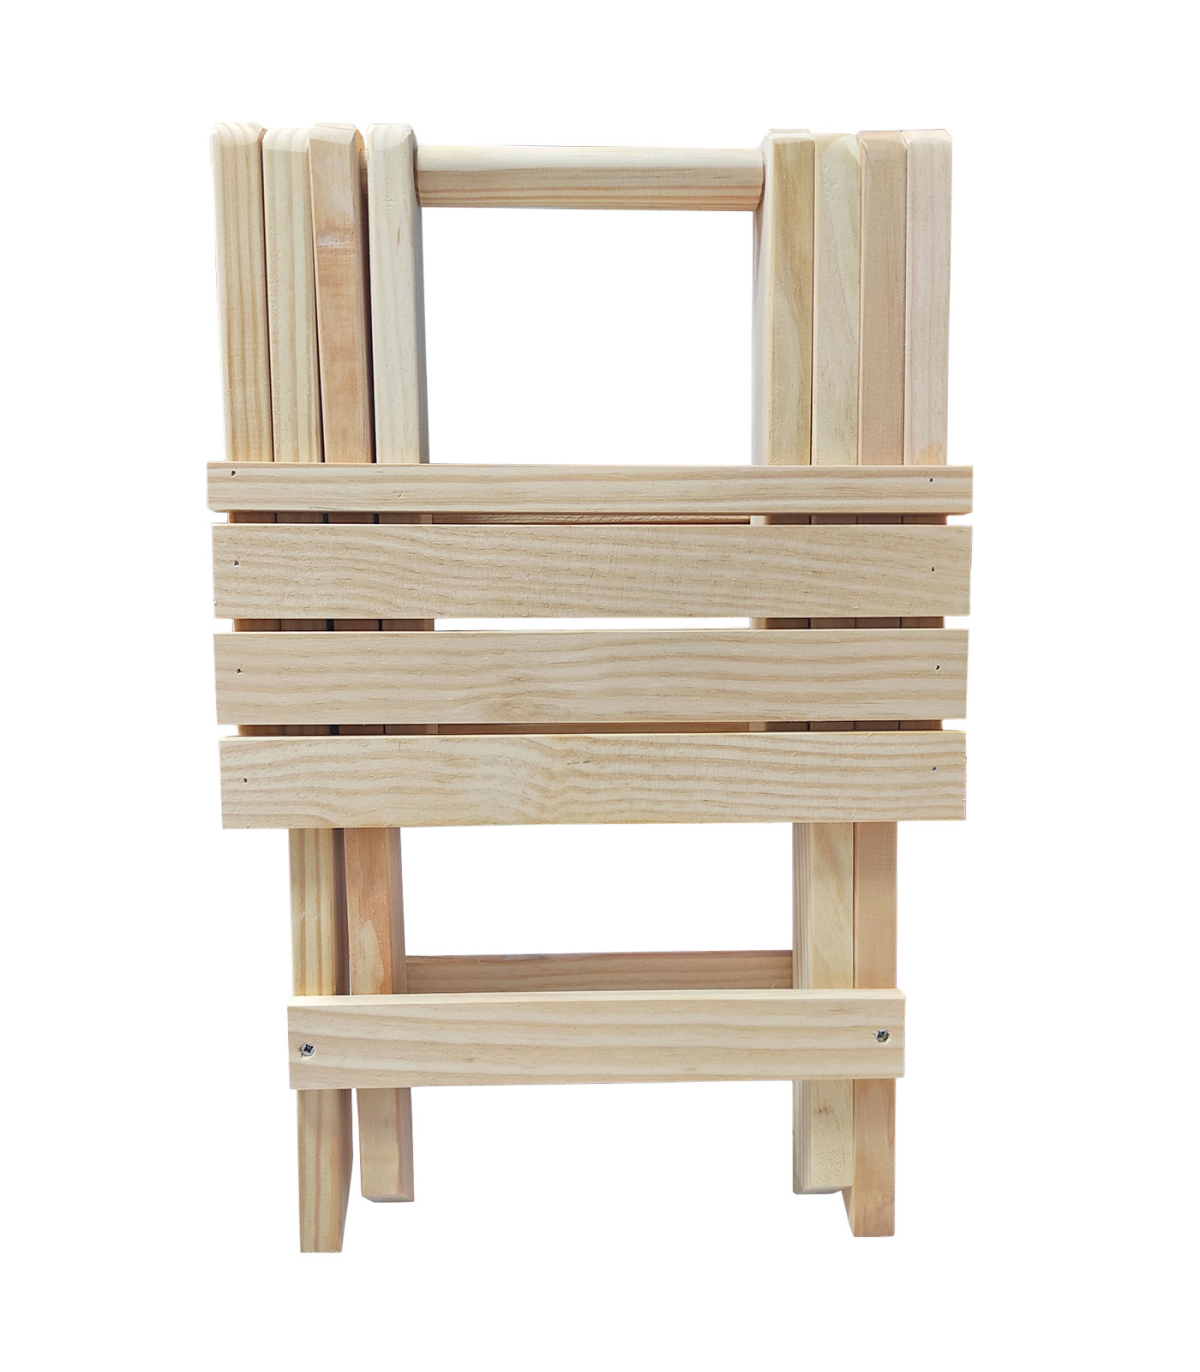 Tradineur - Silla plegable de madera con reposapiés para exterior, asiento  de 33 x 30 cm, máx. 95 kg, jardín, terraza, balcón